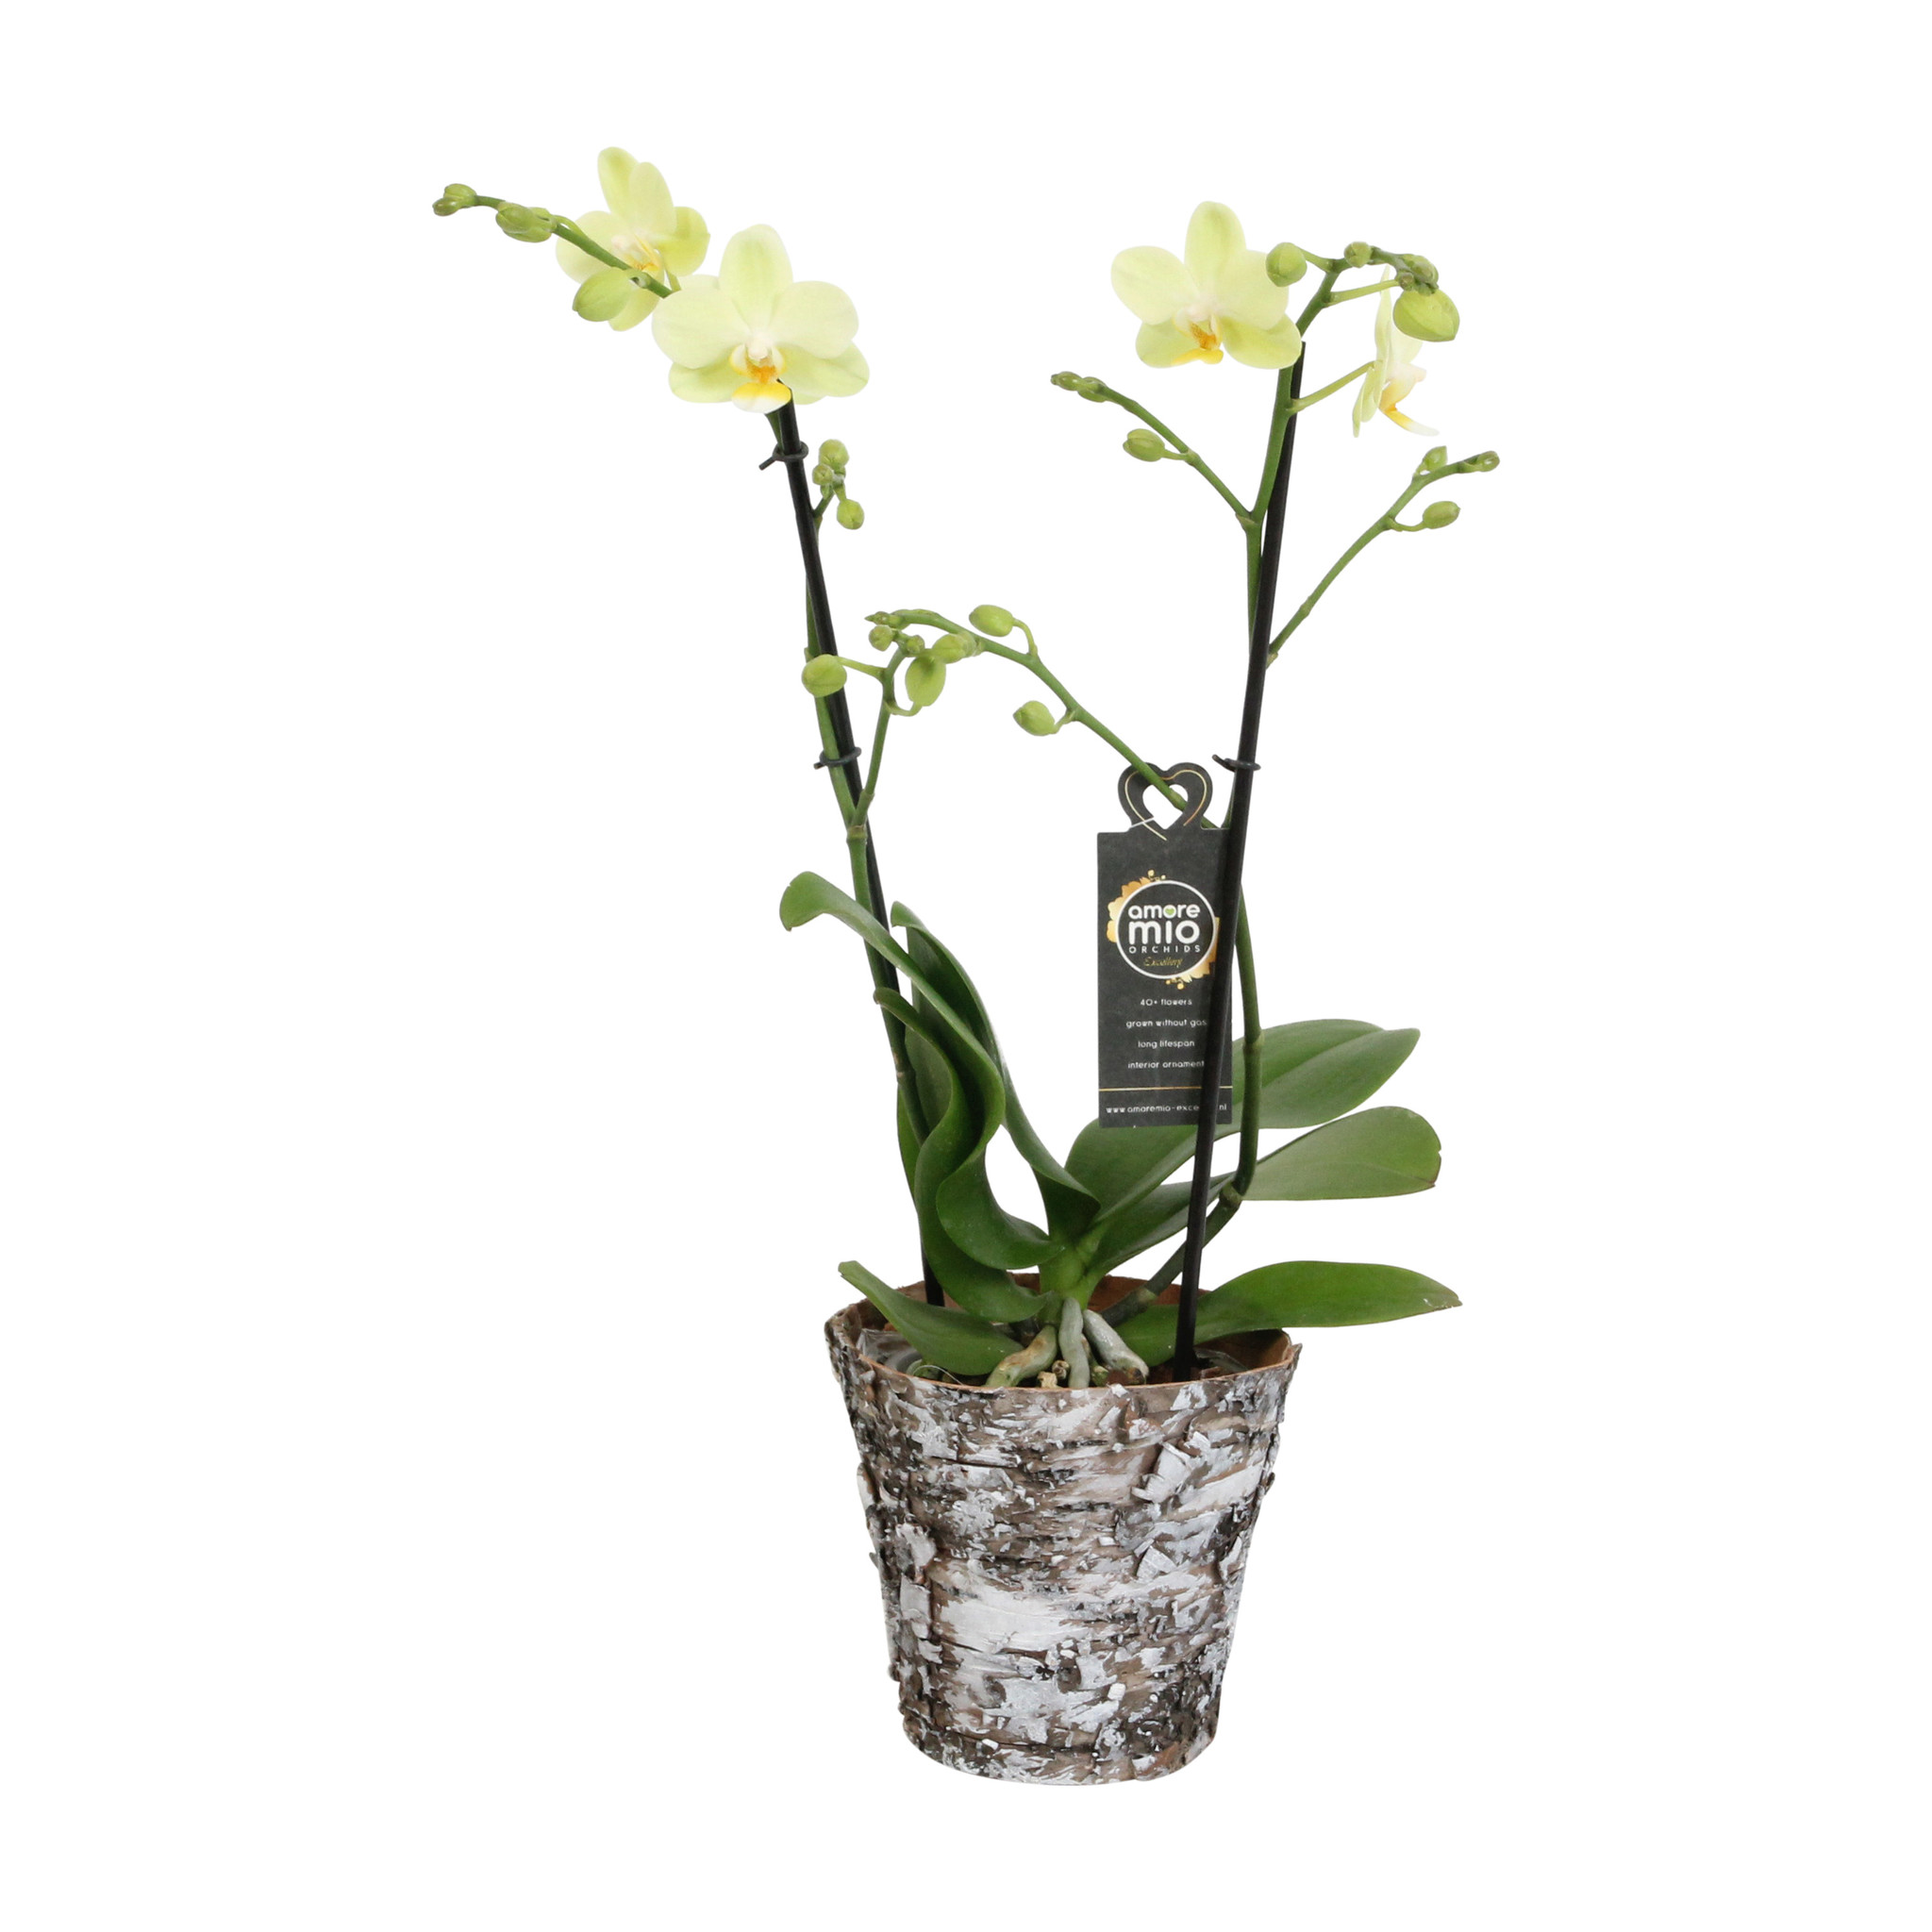 Green Pixie met Wooden pot (Phalaenopsis Green Pixie met Wooden pot - 12x45 cm)